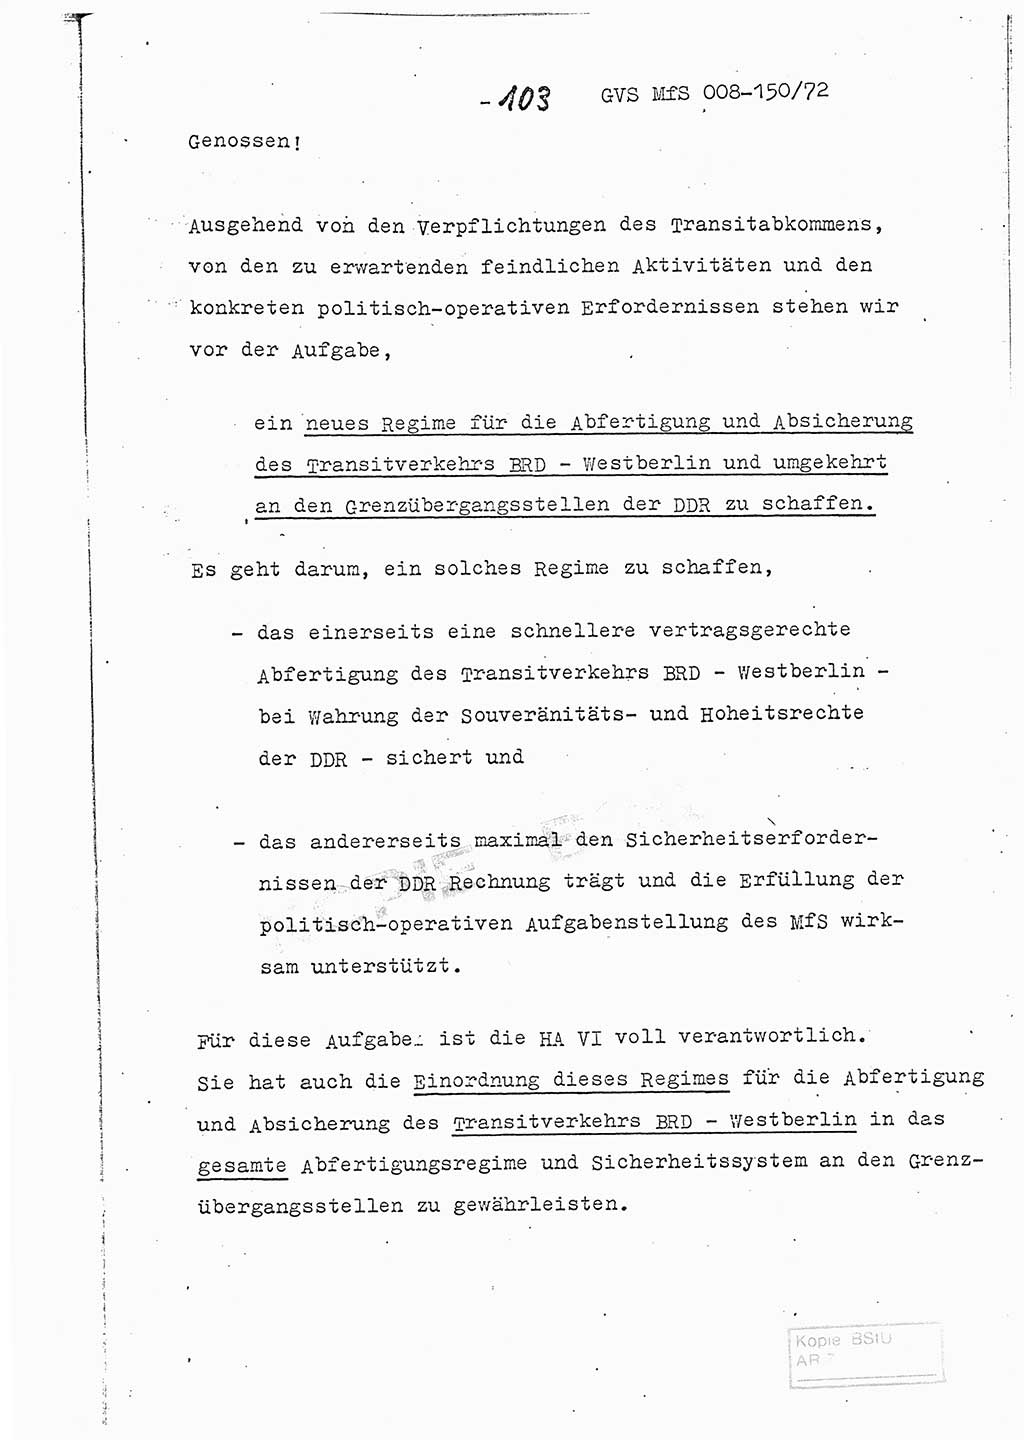 Referat (Entwurf) des Genossen Minister (Generaloberst Erich Mielke) auf der Dienstkonferenz 1972, Ministerium für Staatssicherheit (MfS) [Deutsche Demokratische Republik (DDR)], Der Minister, Geheime Verschlußsache (GVS) 008-150/72, Berlin 25.2.1972, Seite 103 (Ref. Entw. DK MfS DDR Min. GVS 008-150/72 1972, S. 103)